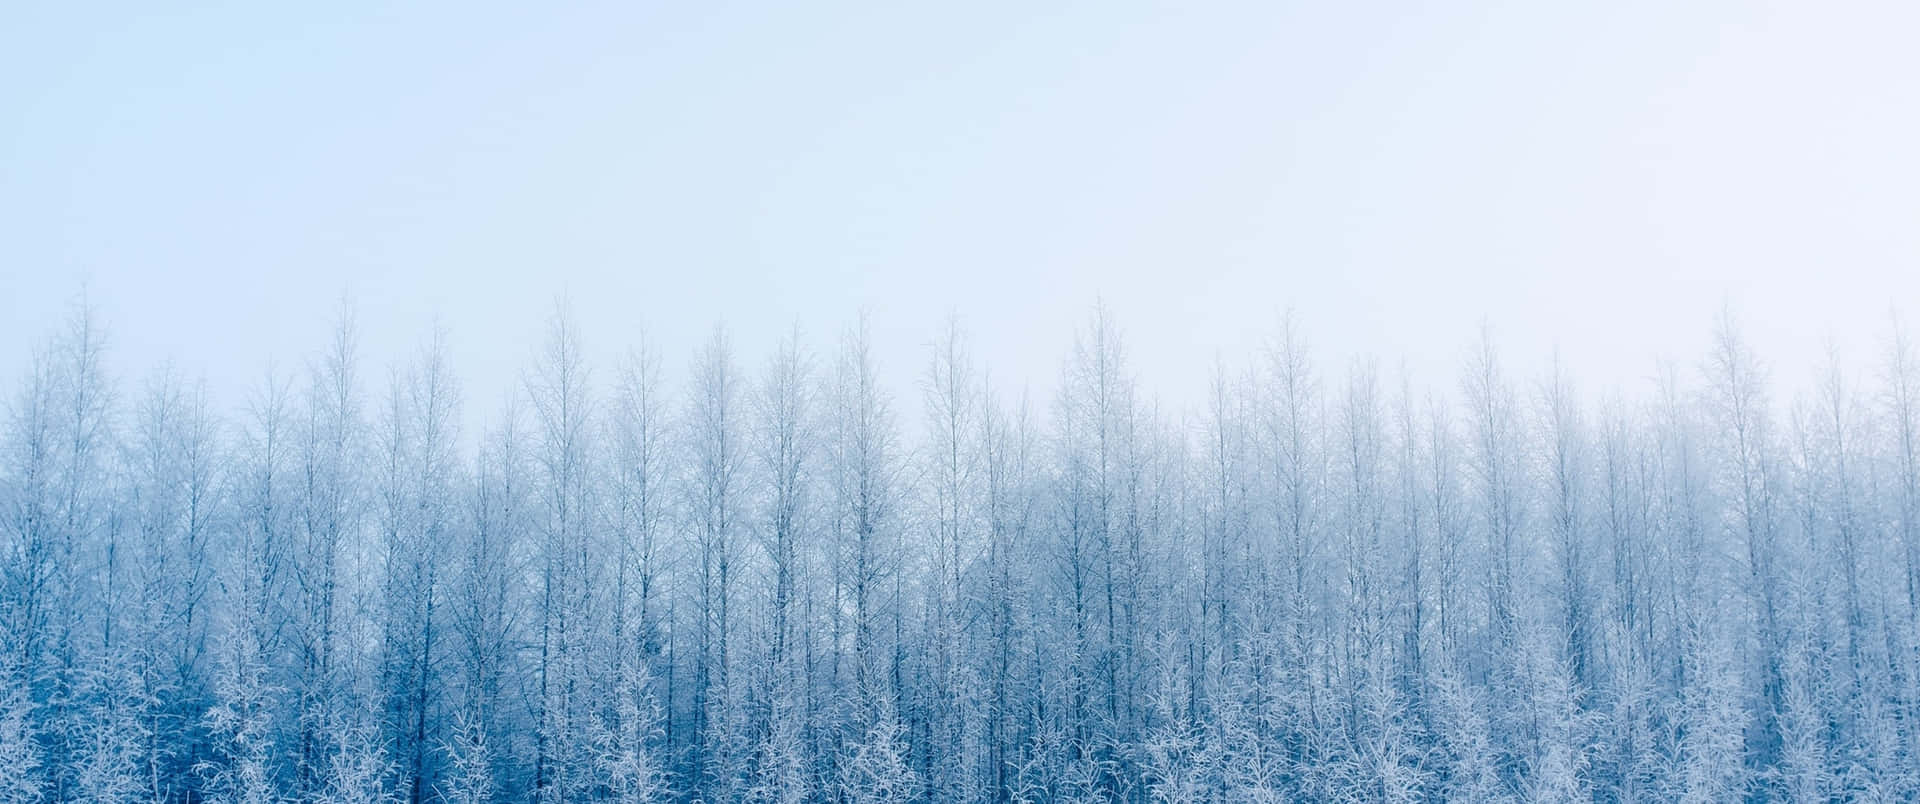 Snöigmiljö På Vintern. Wallpaper